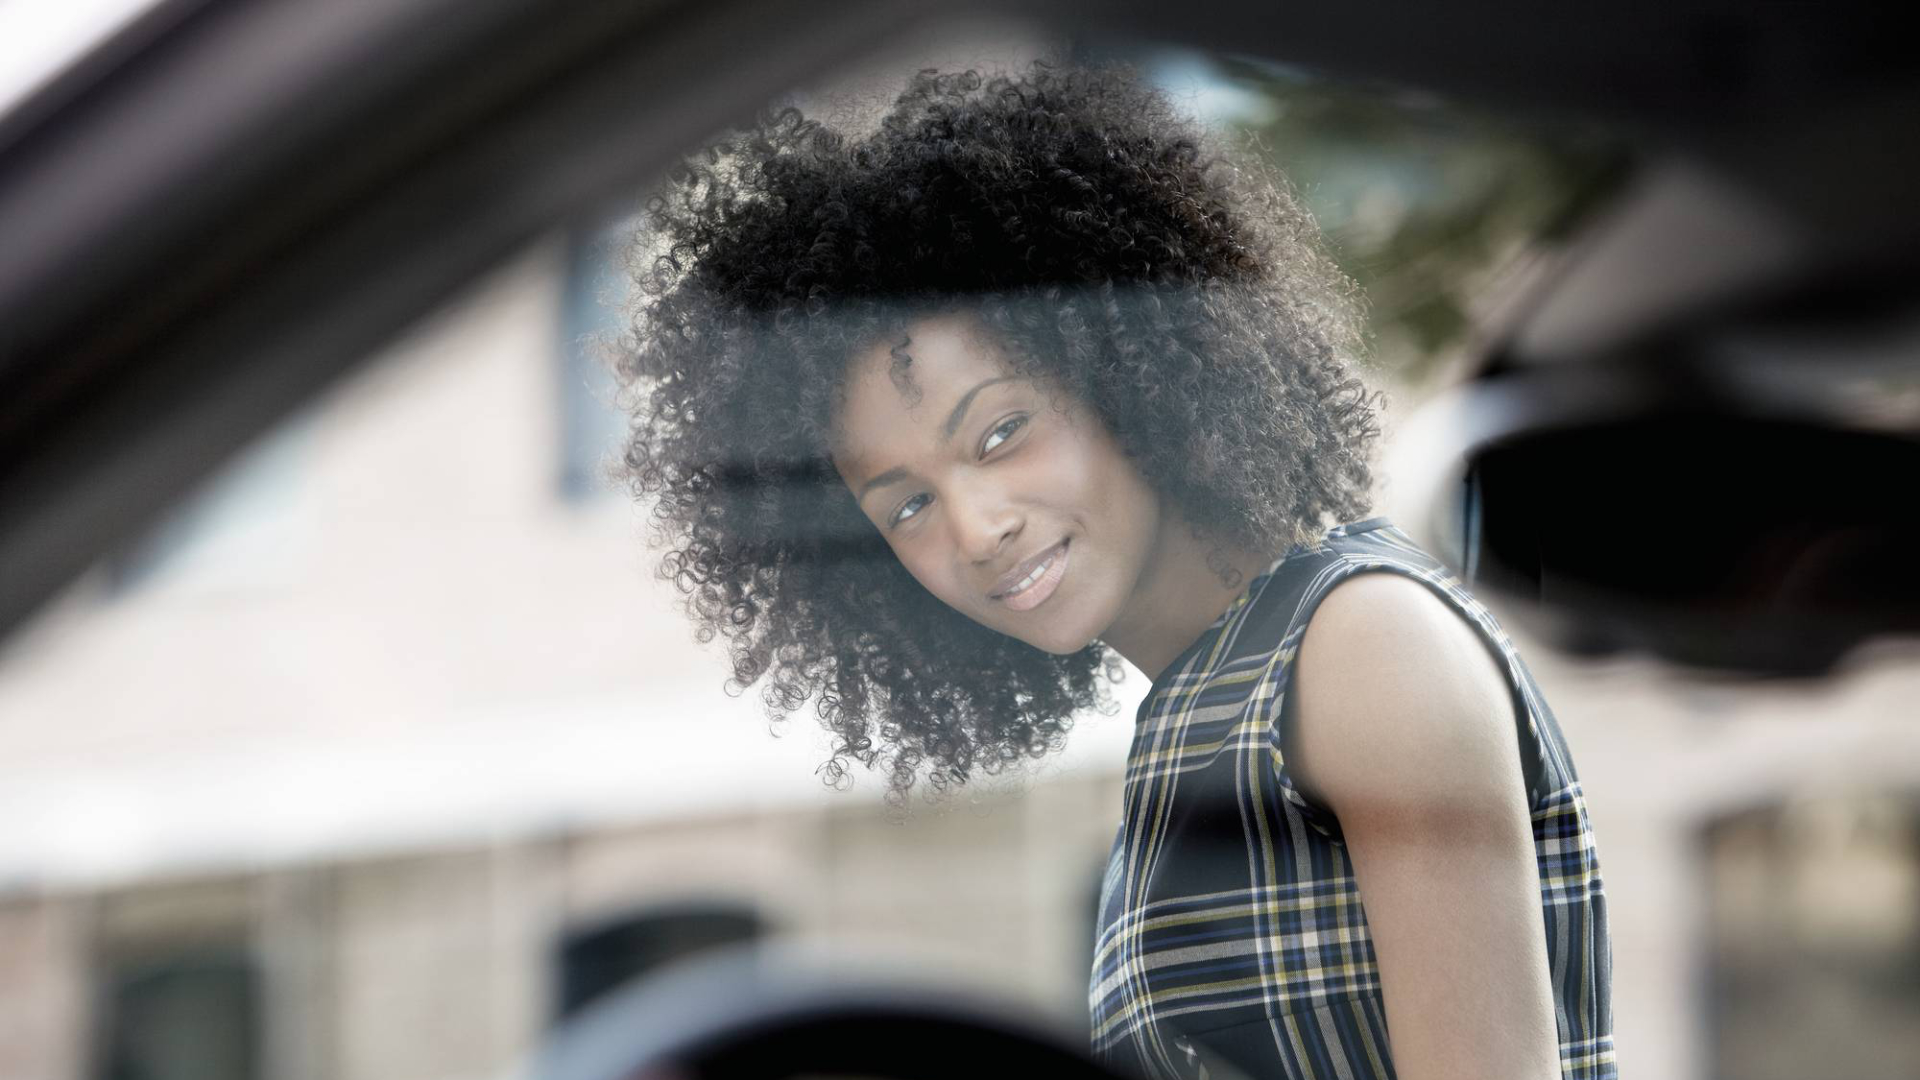 Eine Frau steht neben einem Audi und blickt freundlich-suchend ins Auto.